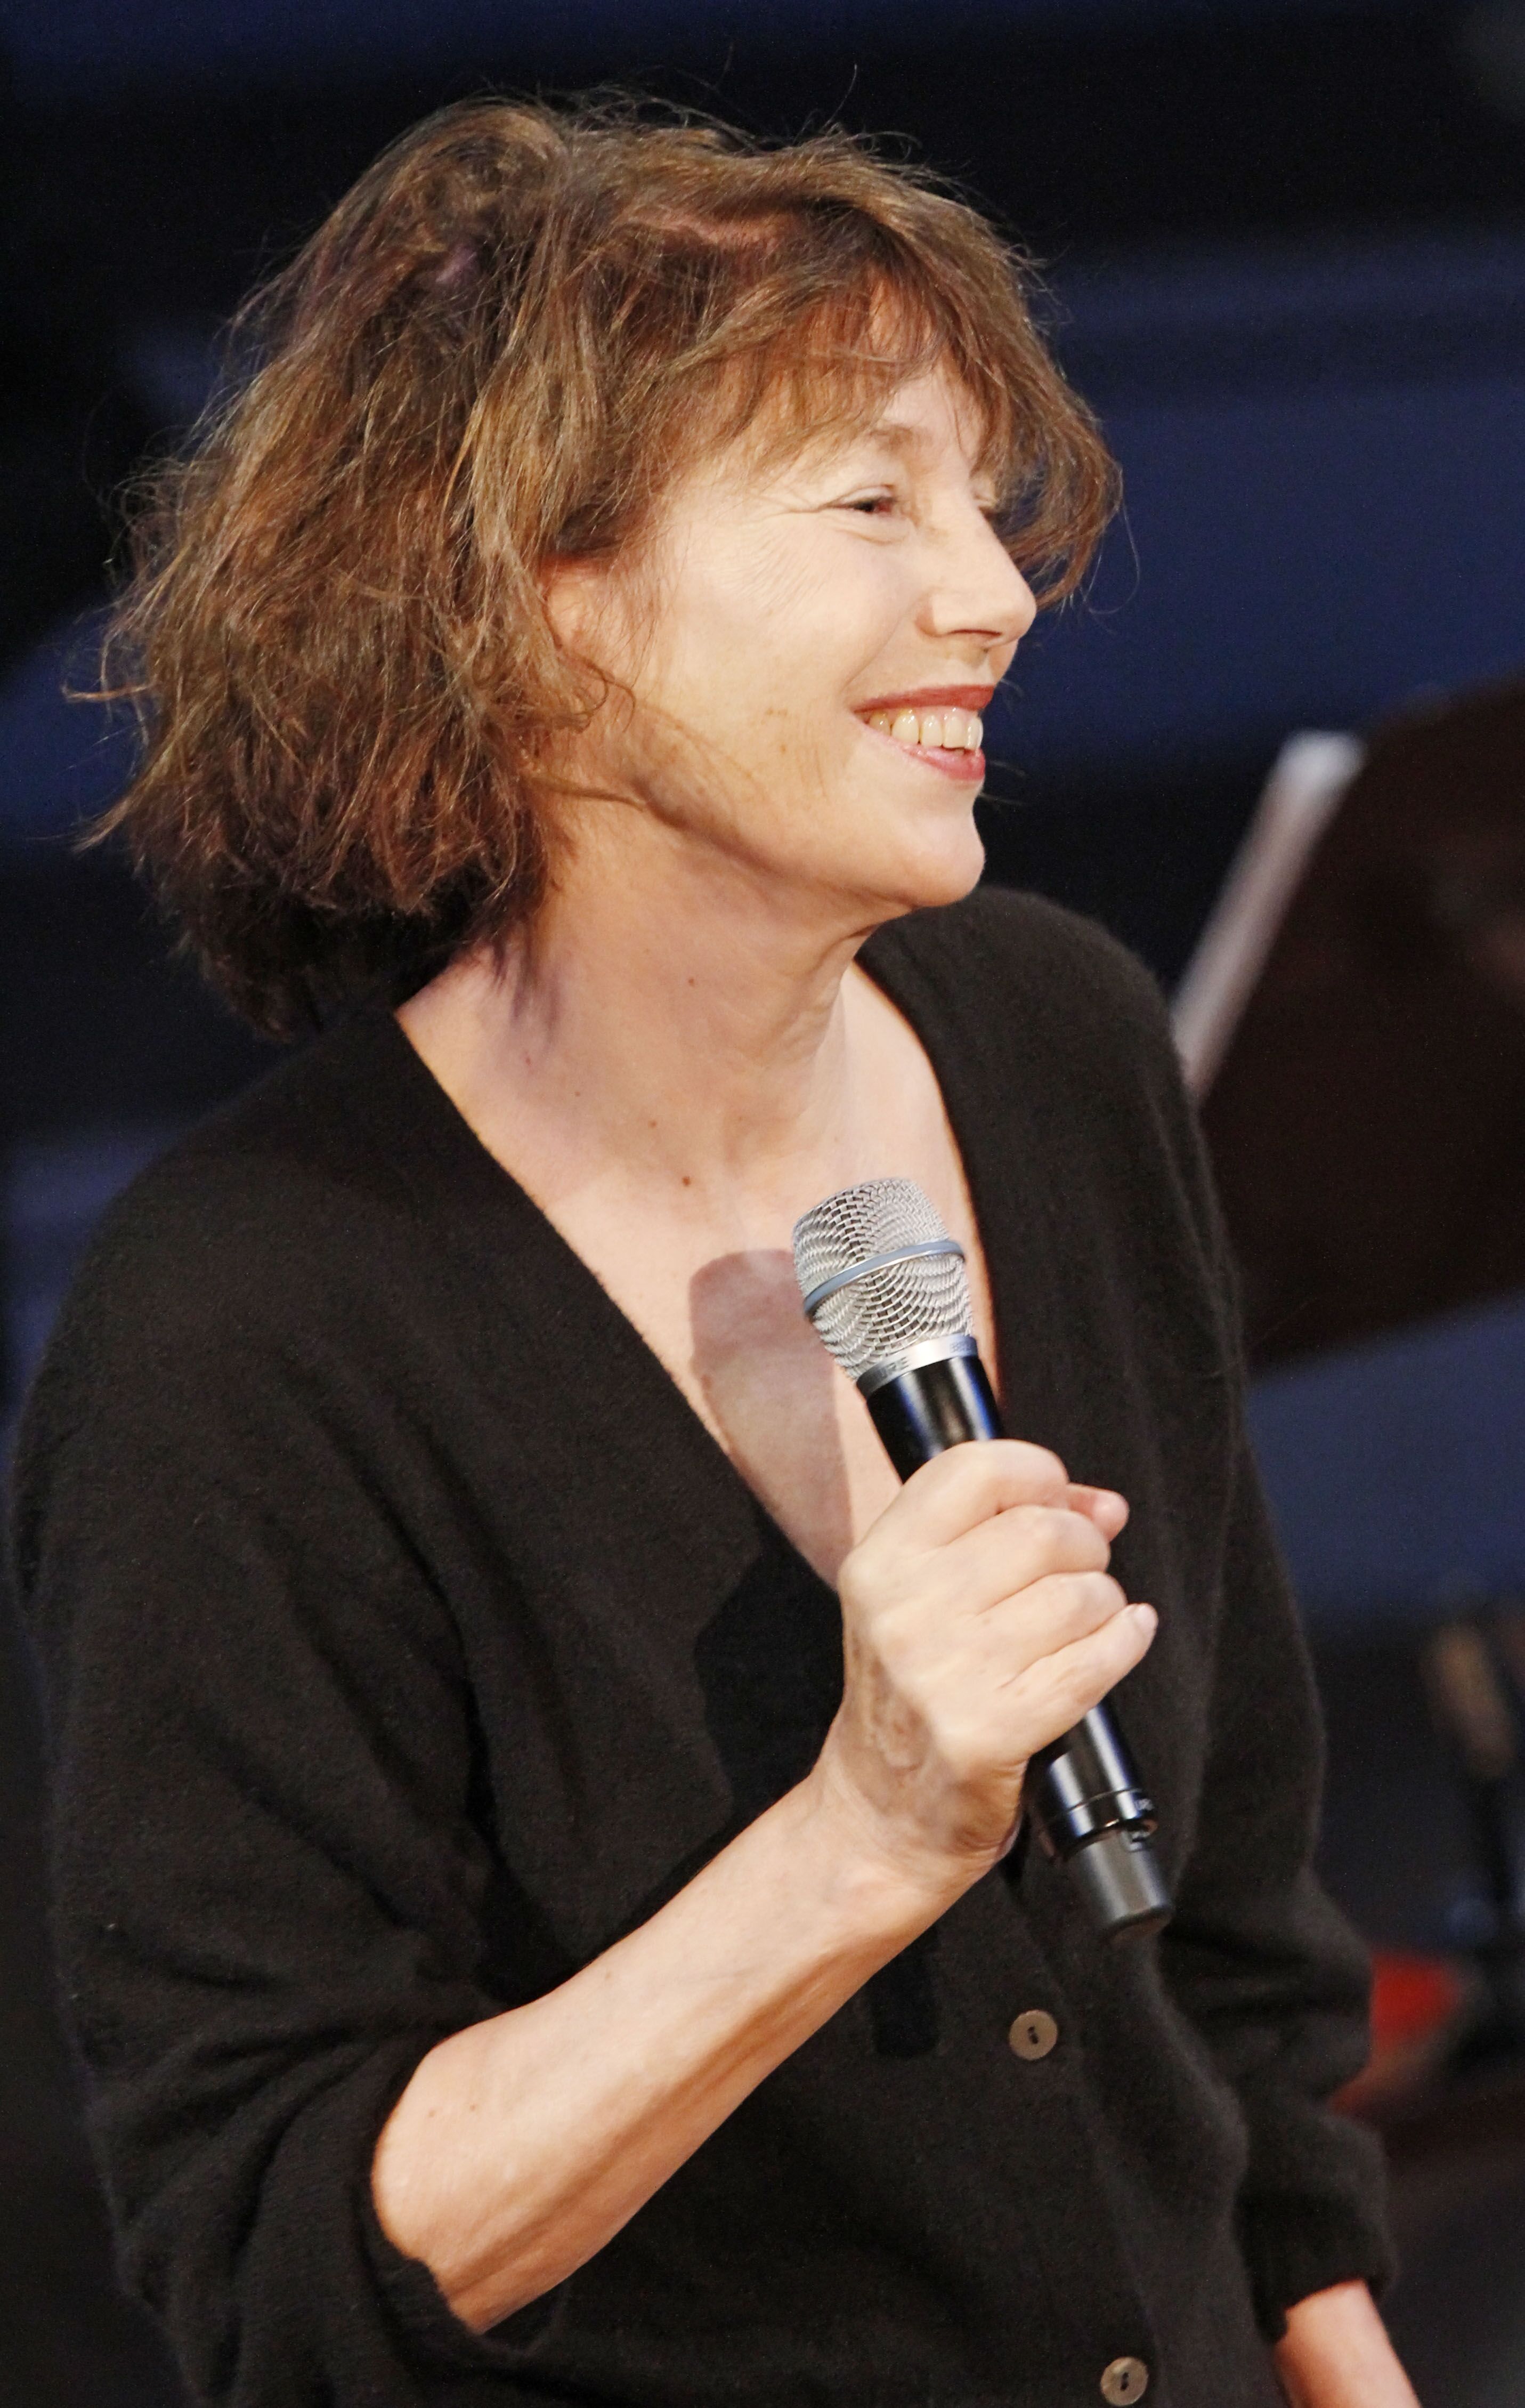 La chanteuse Jane Birkin se produit lors d'un concert au Kammermusiksaal le 28 octobre 2011 à Berlin, en Allemagne. | Photo : Getty Images